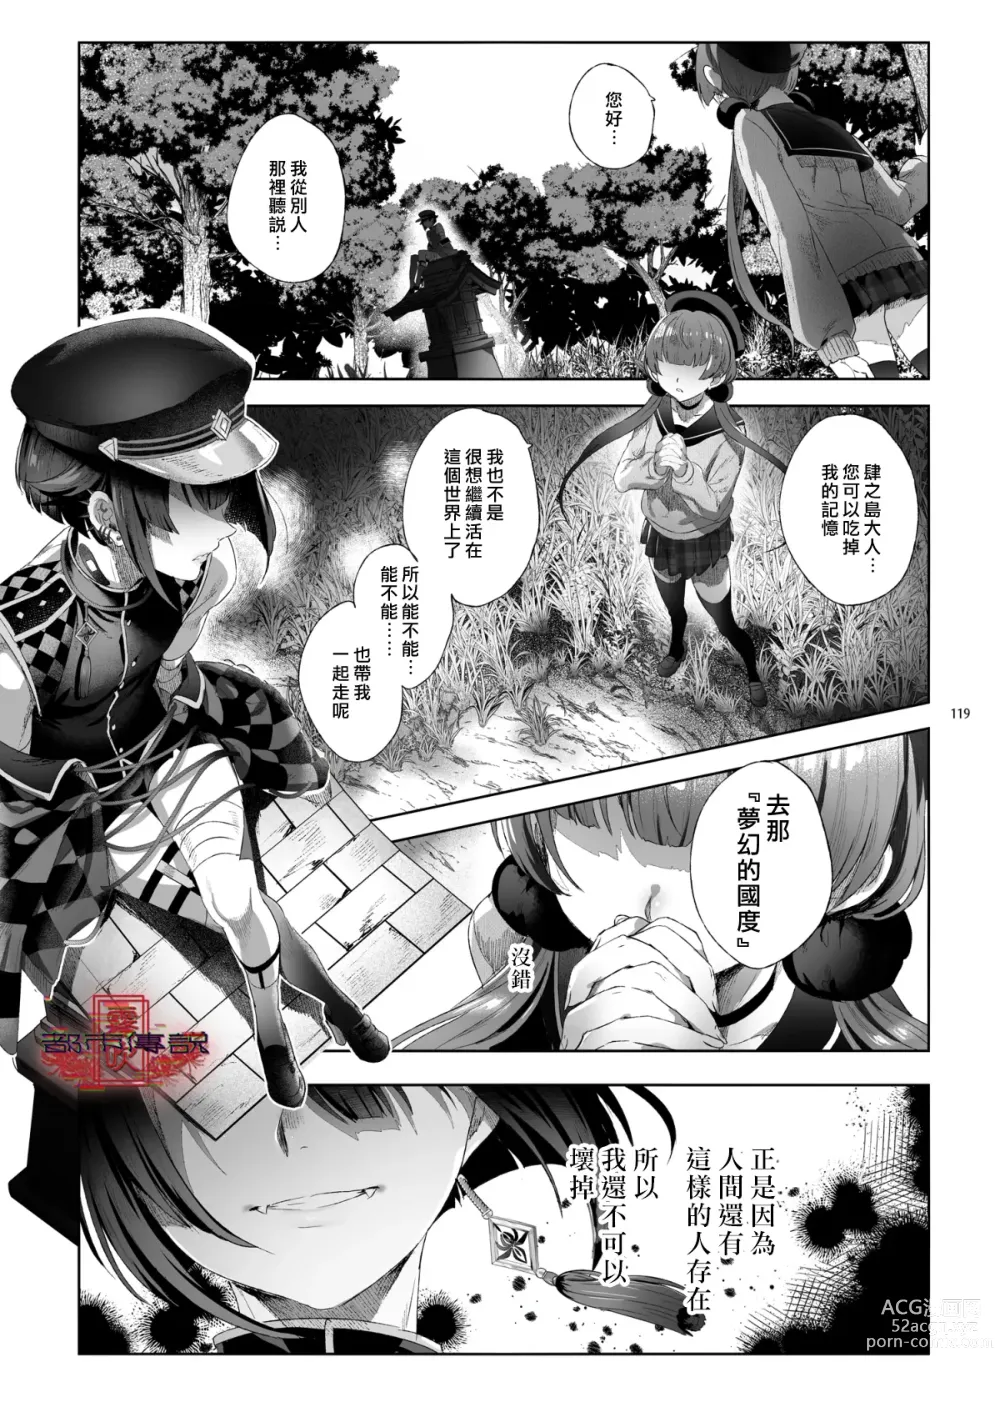 Page 117 of doujinshi Shounen Toshi Densetsu Shinoshima Raise Gendai Hen